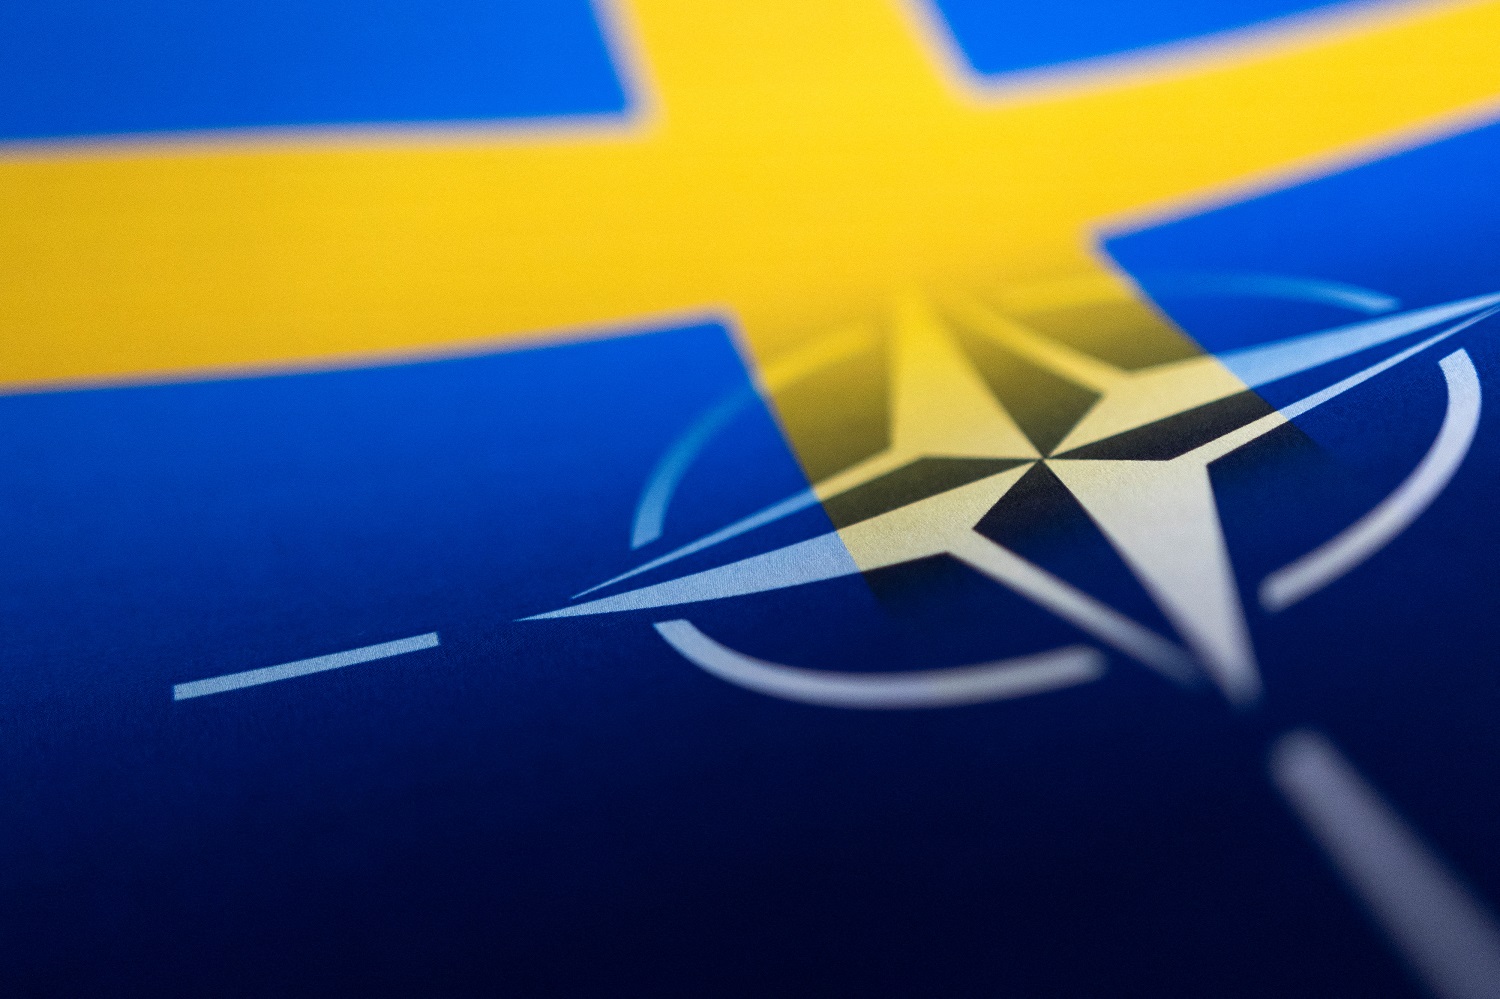 Užsitęsus deryboms dėl narystės NATO, Švedija planuoja glaudesnius gynybos ryšius su JAV